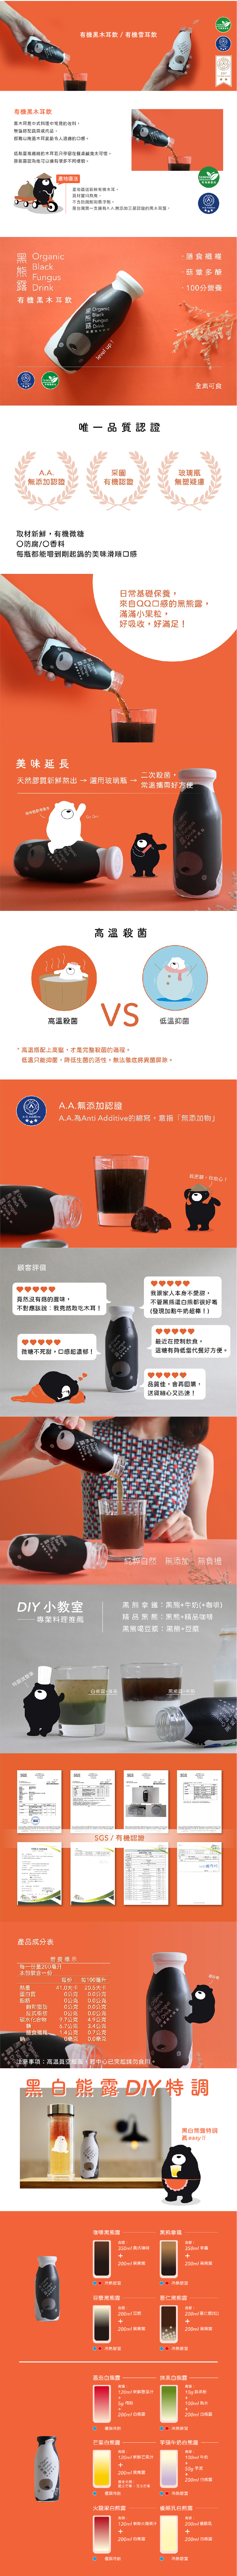 啓祺嘉黑熊露 - 有機黑木耳飲(黑木耳露、黑木耳飲品、低糖飲品)產品介紹